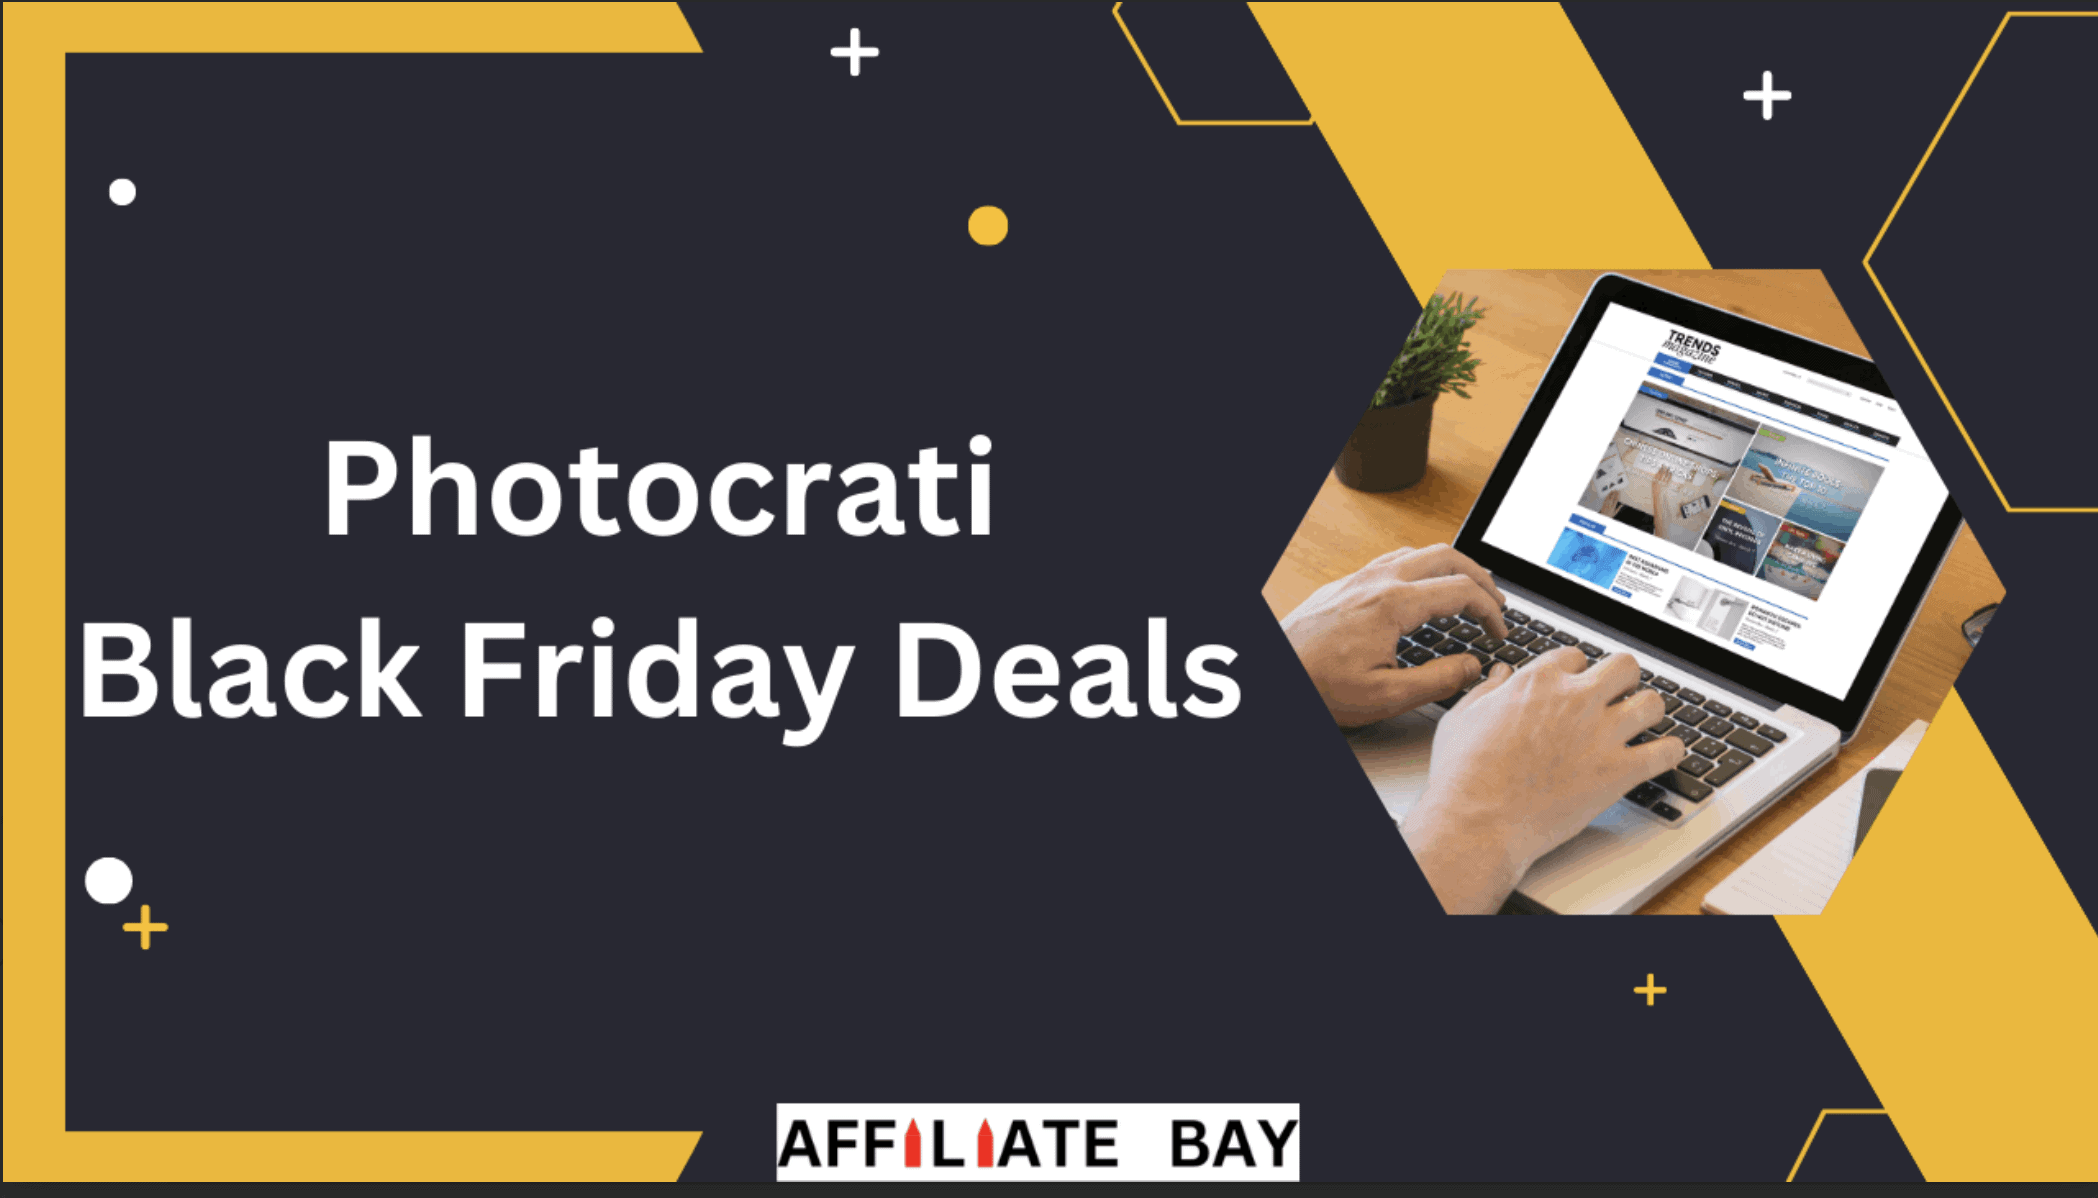 Photocrati Black Friday Deals